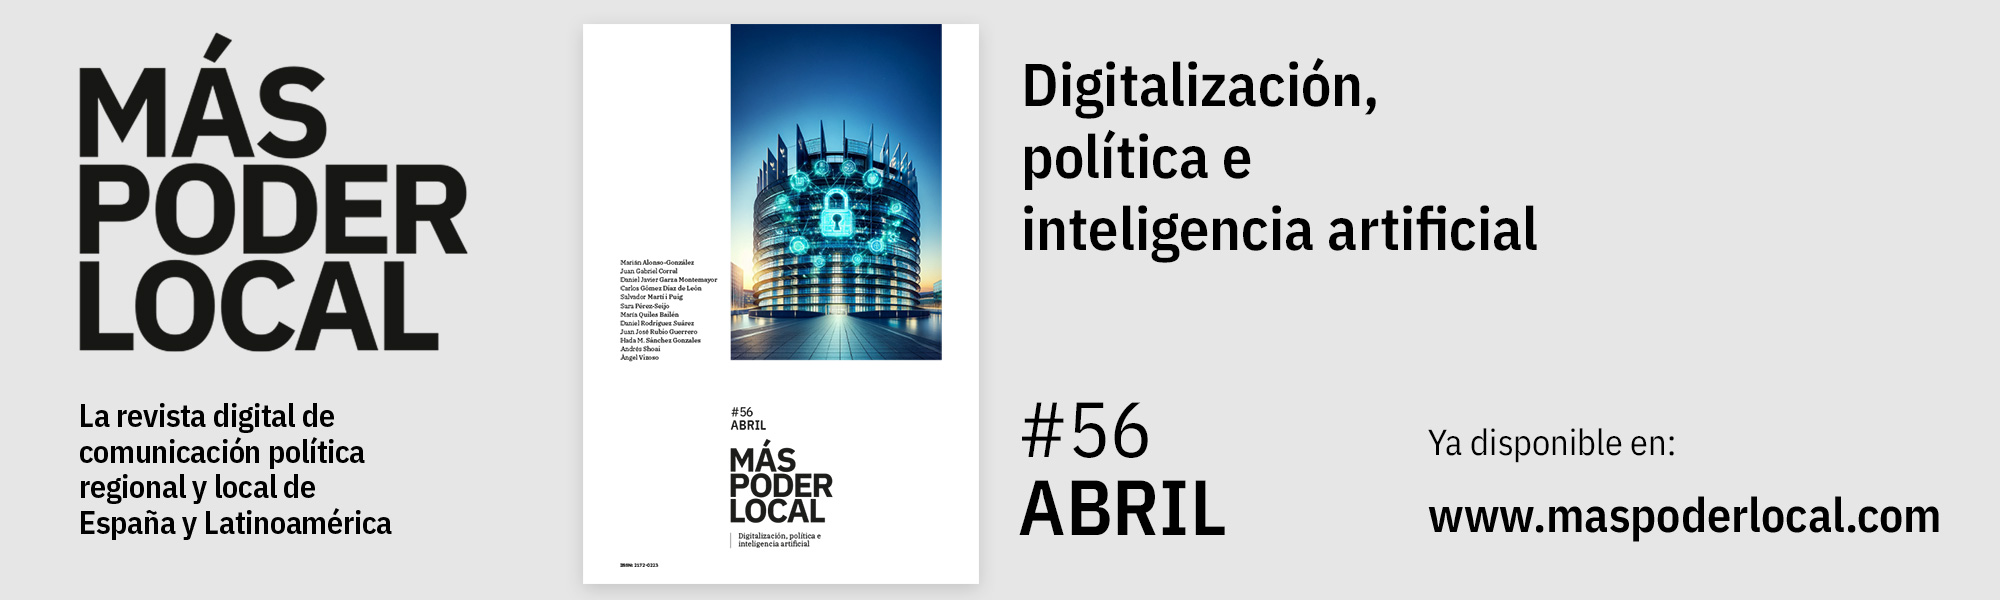 Digitalización, política e inteligencia artificial, edición nº56 de la Revisa Más Poder Local, ya disponible